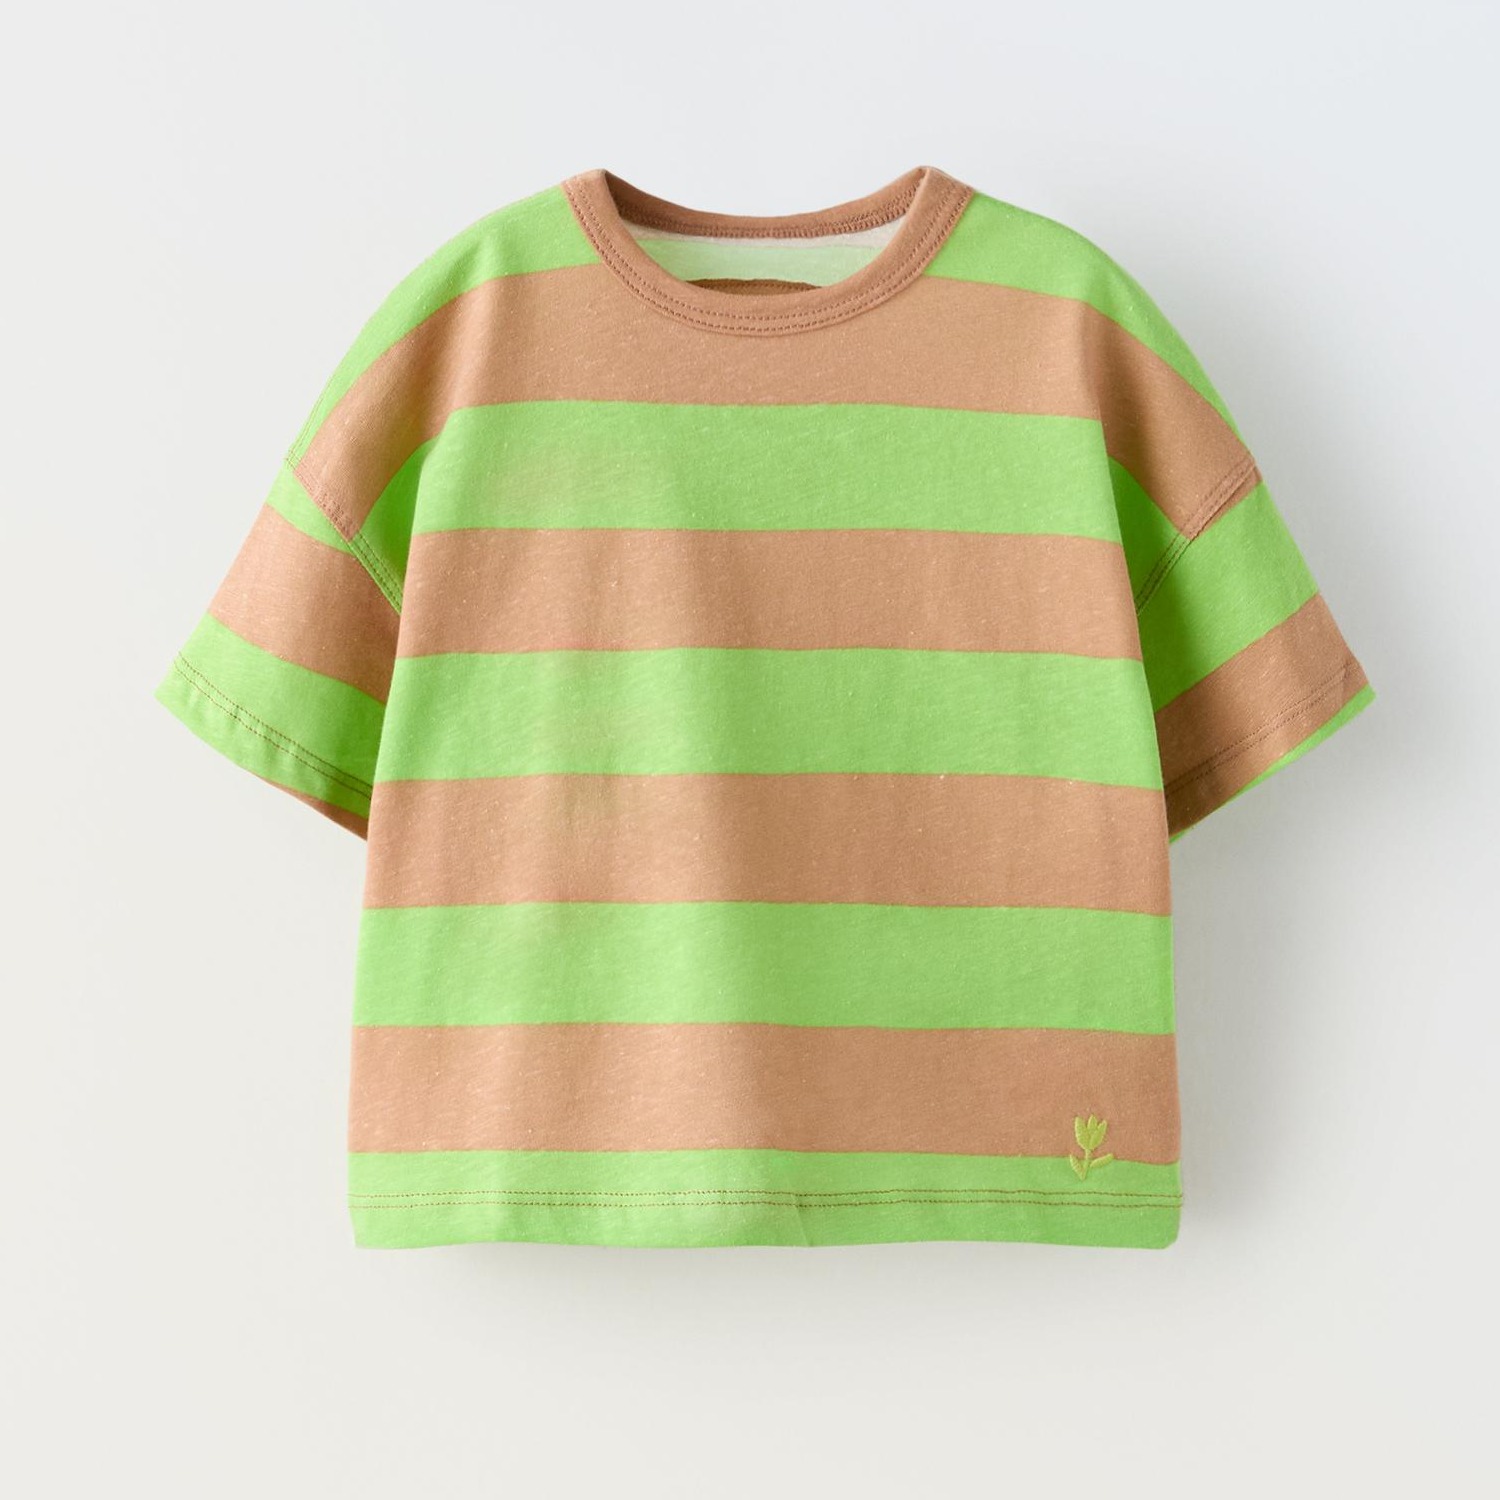 Футболка Zara Striped Embroidered, зеленый/бежевый